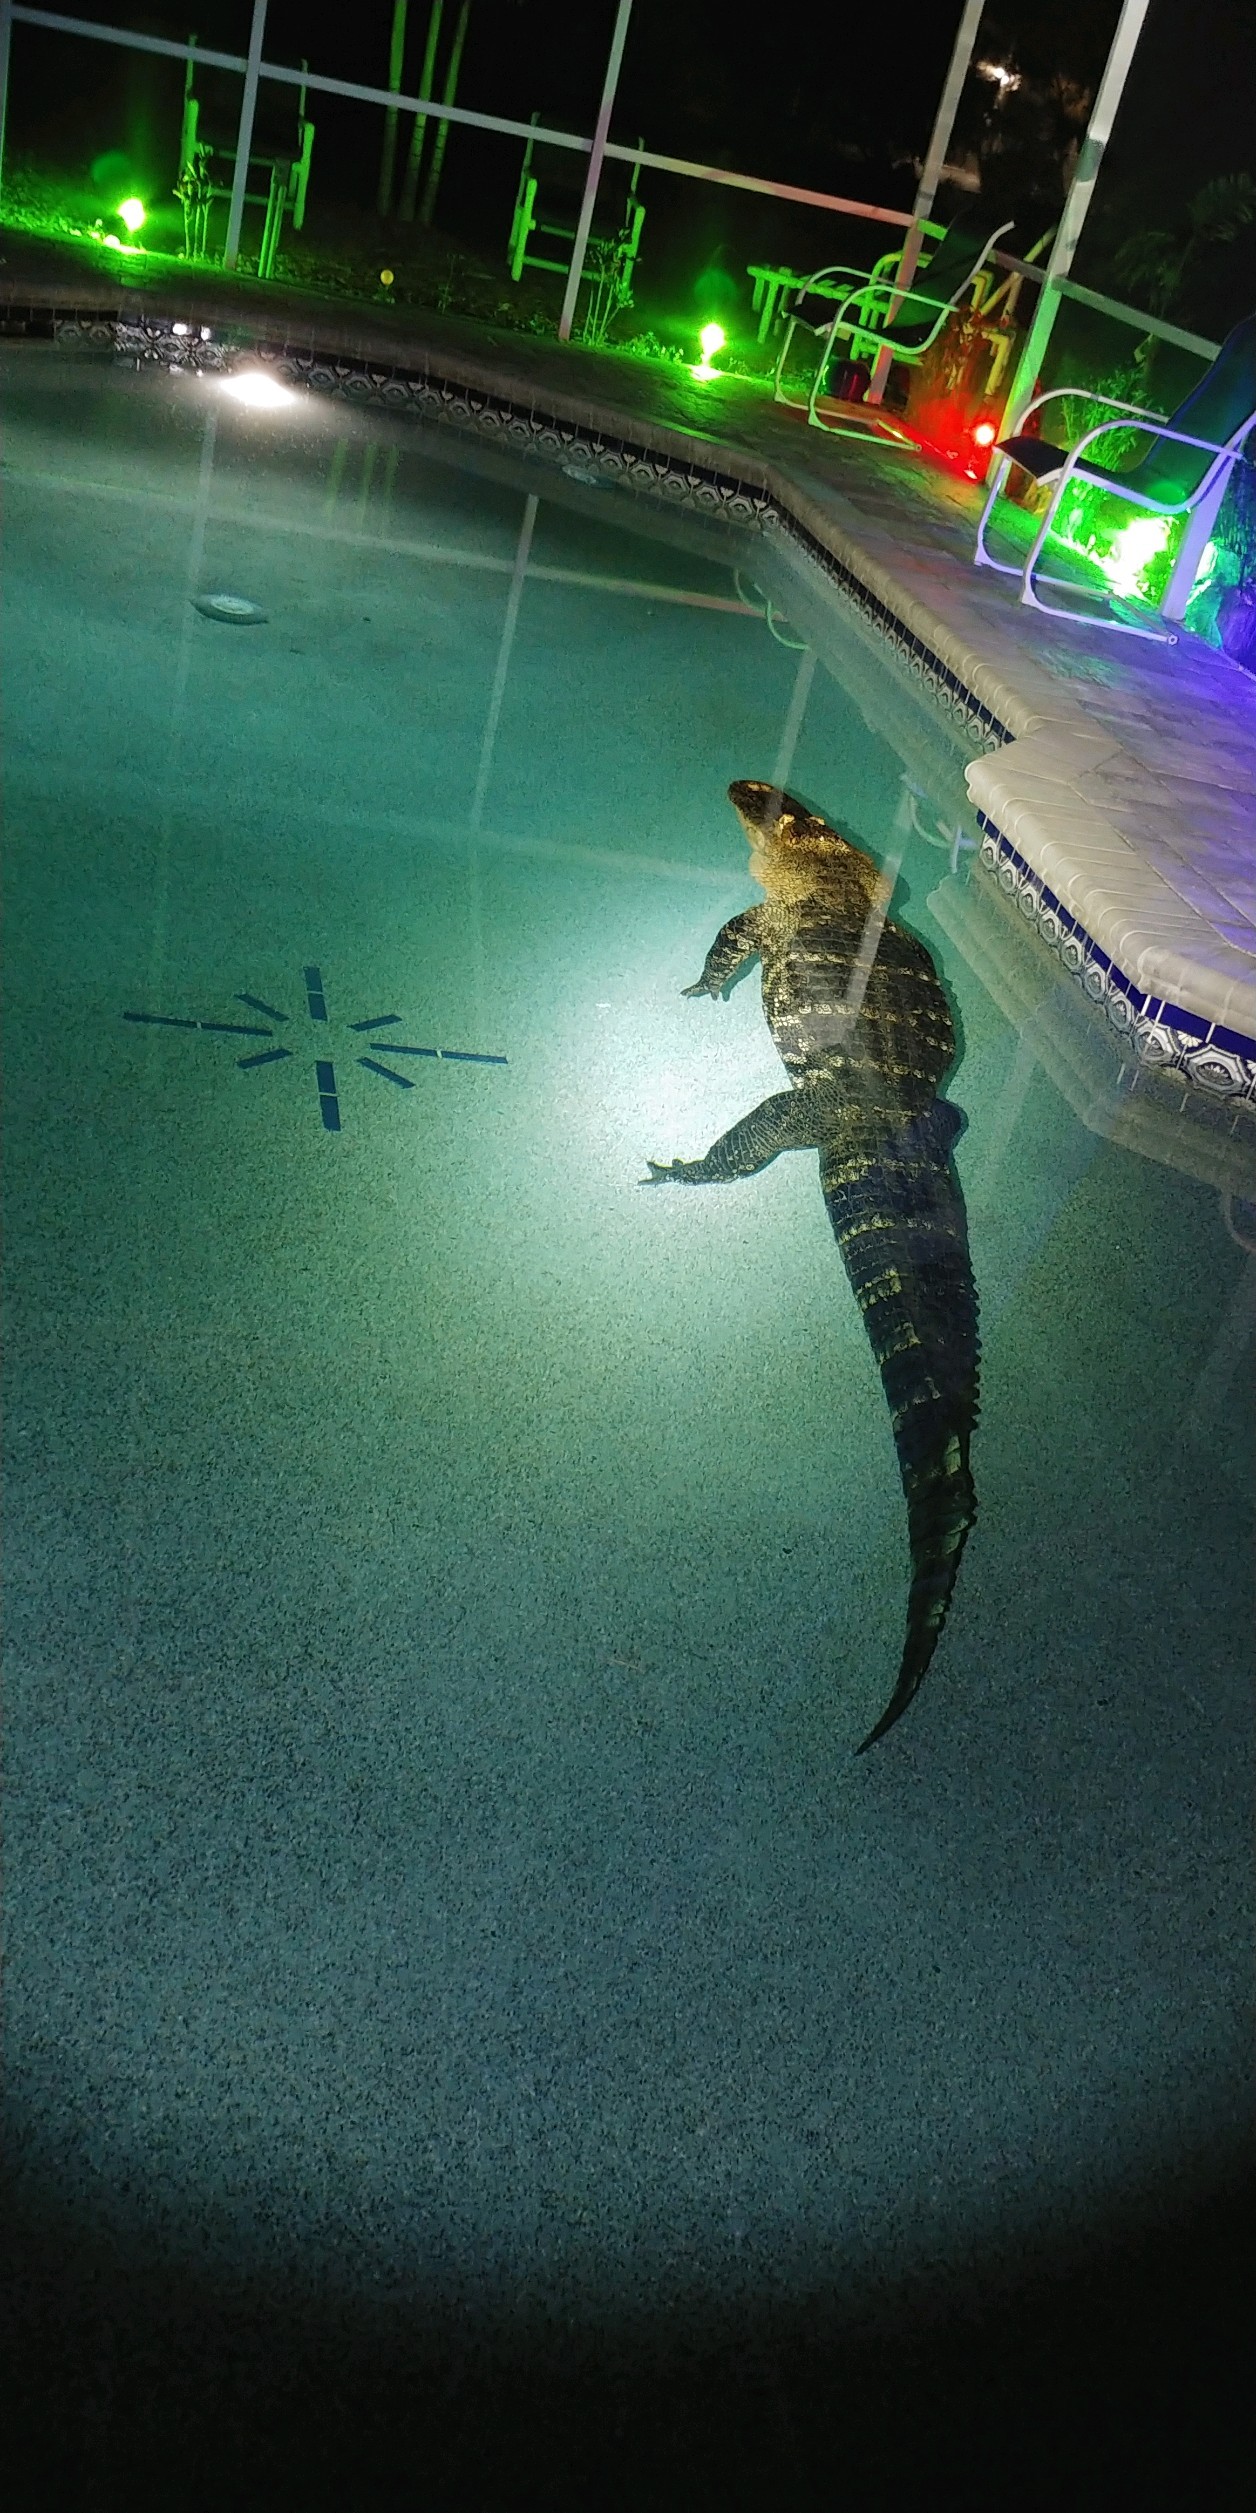 Família escuta barulho e encontra crocodilo de 3 metros em piscina nos Estados Unidos; veja fotos